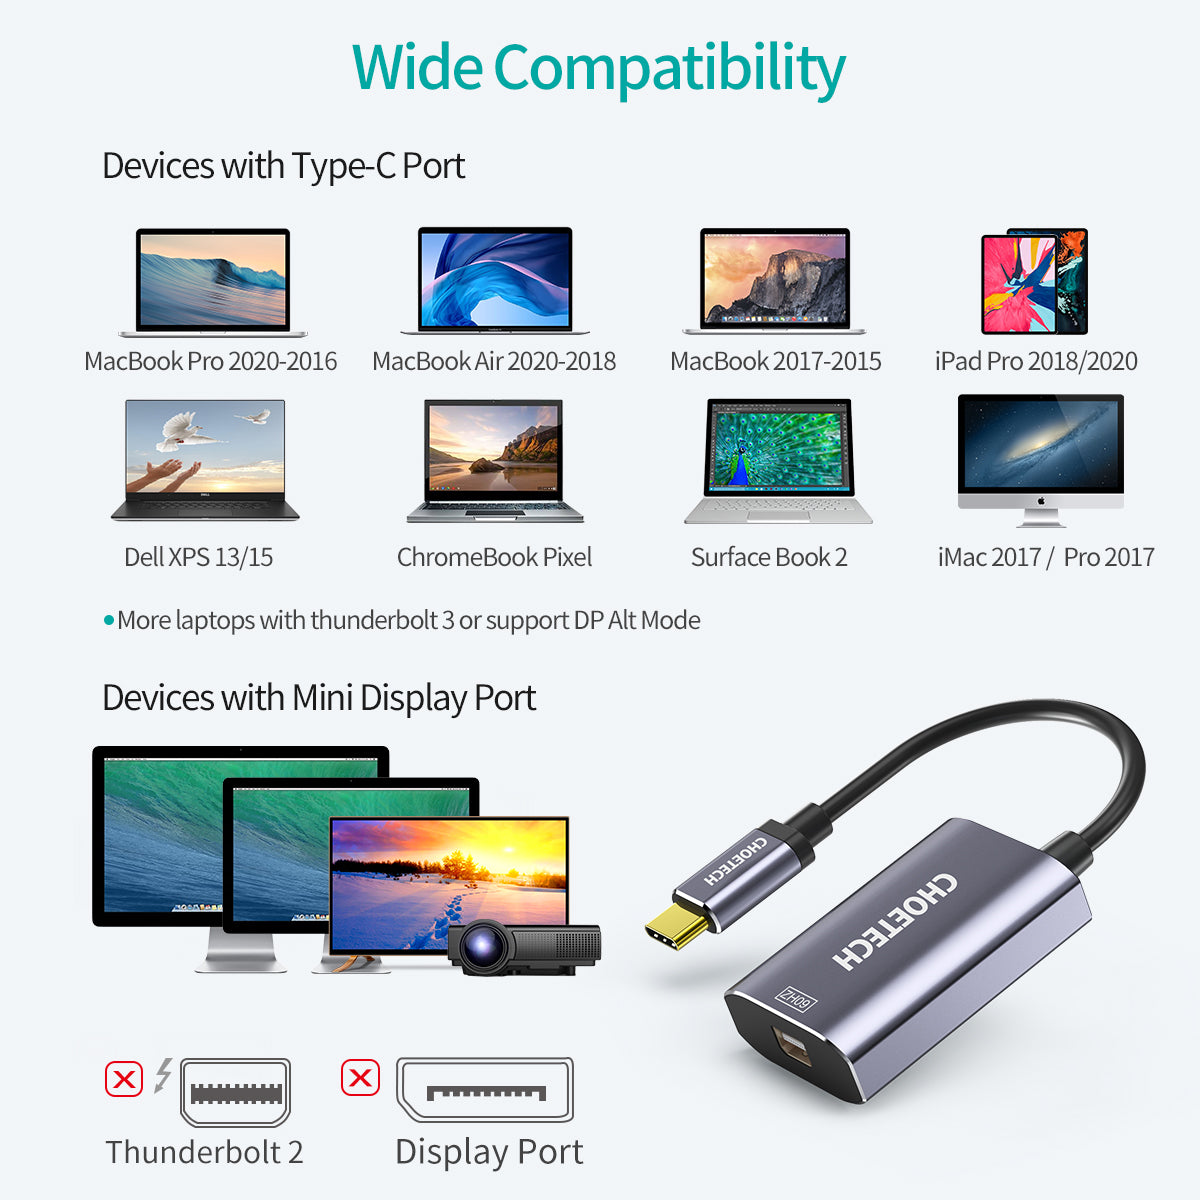 HUB-M06 CHOETECH Adaptateur USB C vers Mini DisplayPort (4K @ 60 Hz) avec alimentation 60 W, adaptateur Type C vers Mini DP (compatible Thunderbolt 3) avec Macbook Pro/Air 2019/2018, Galaxy Note10/S20/S10/Huawei P30